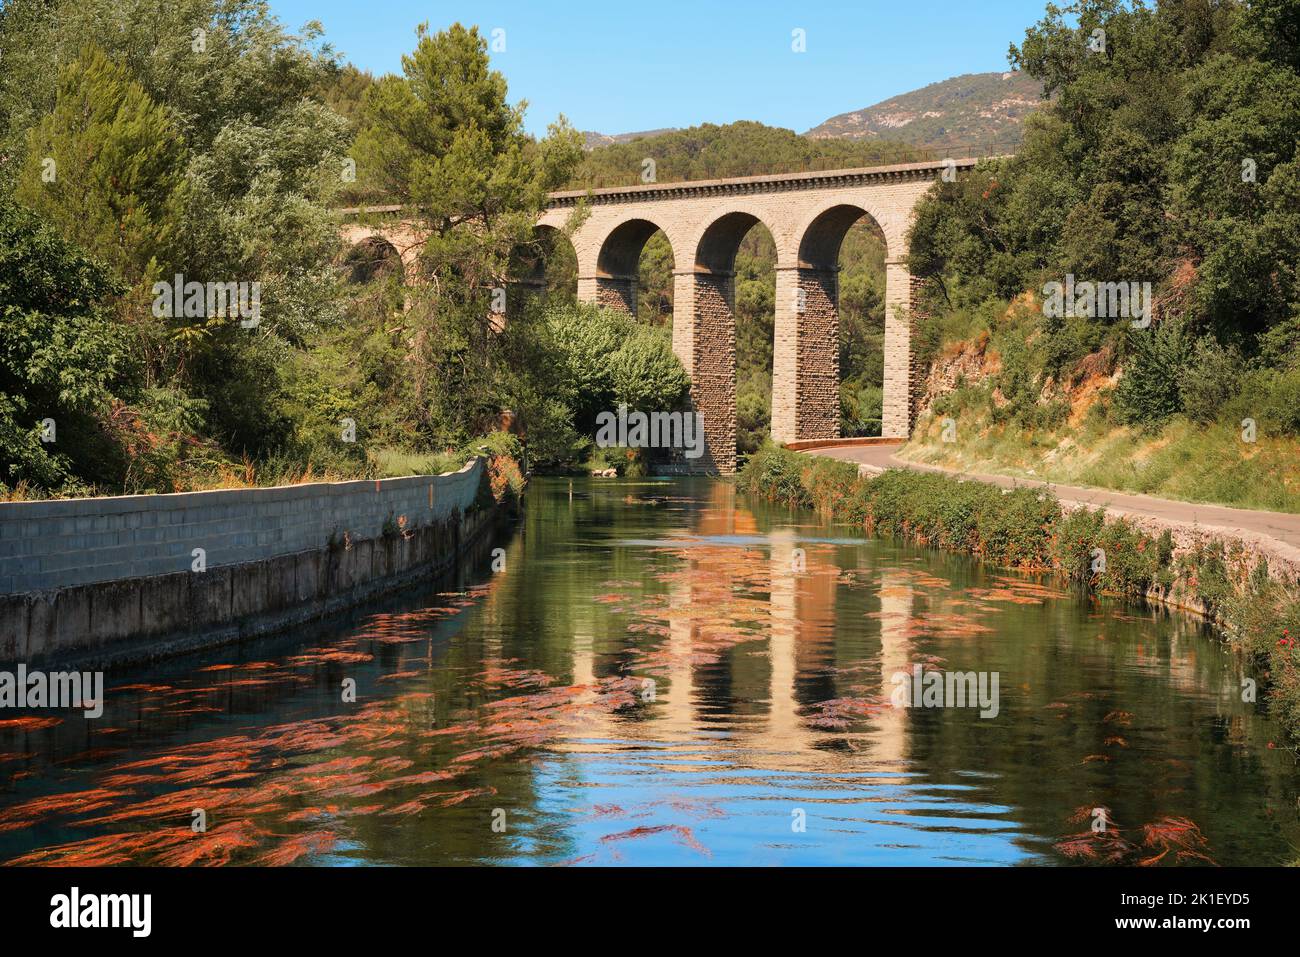 Aqueduc de Galas, Galas Aqueduct Bridge near Fontaine-de-Vaucluse, Provence-Alpes-Côte d'Azur region in southern France. Viaduct over La Sorgue river. Stock Photo